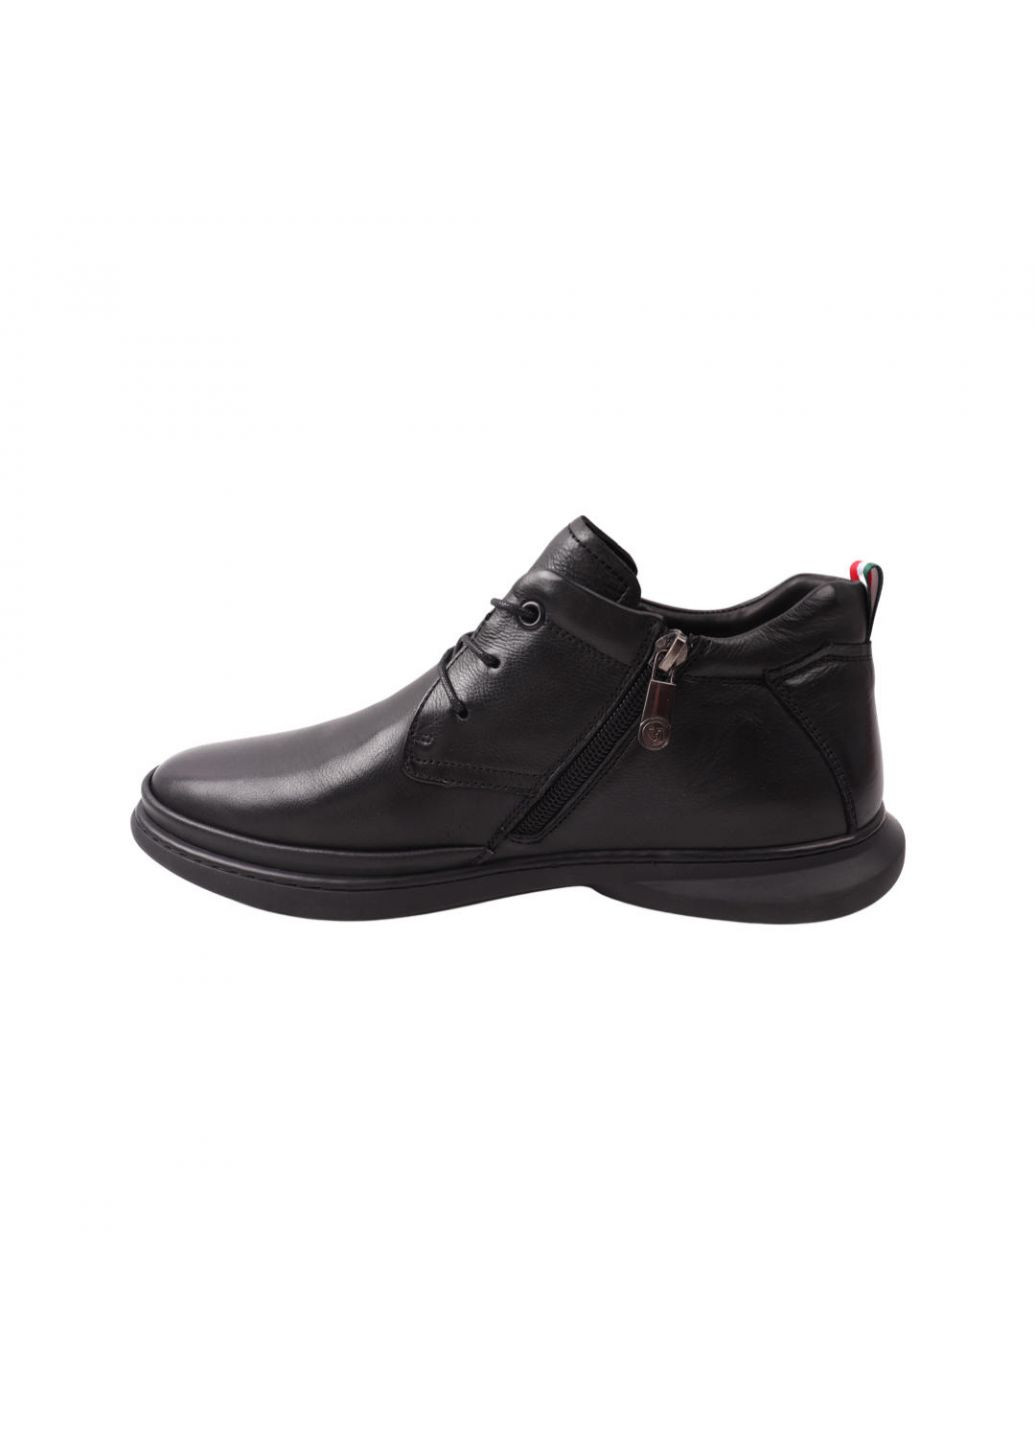 Черные ботинки мужские черные натуральная кожа Cosottinni